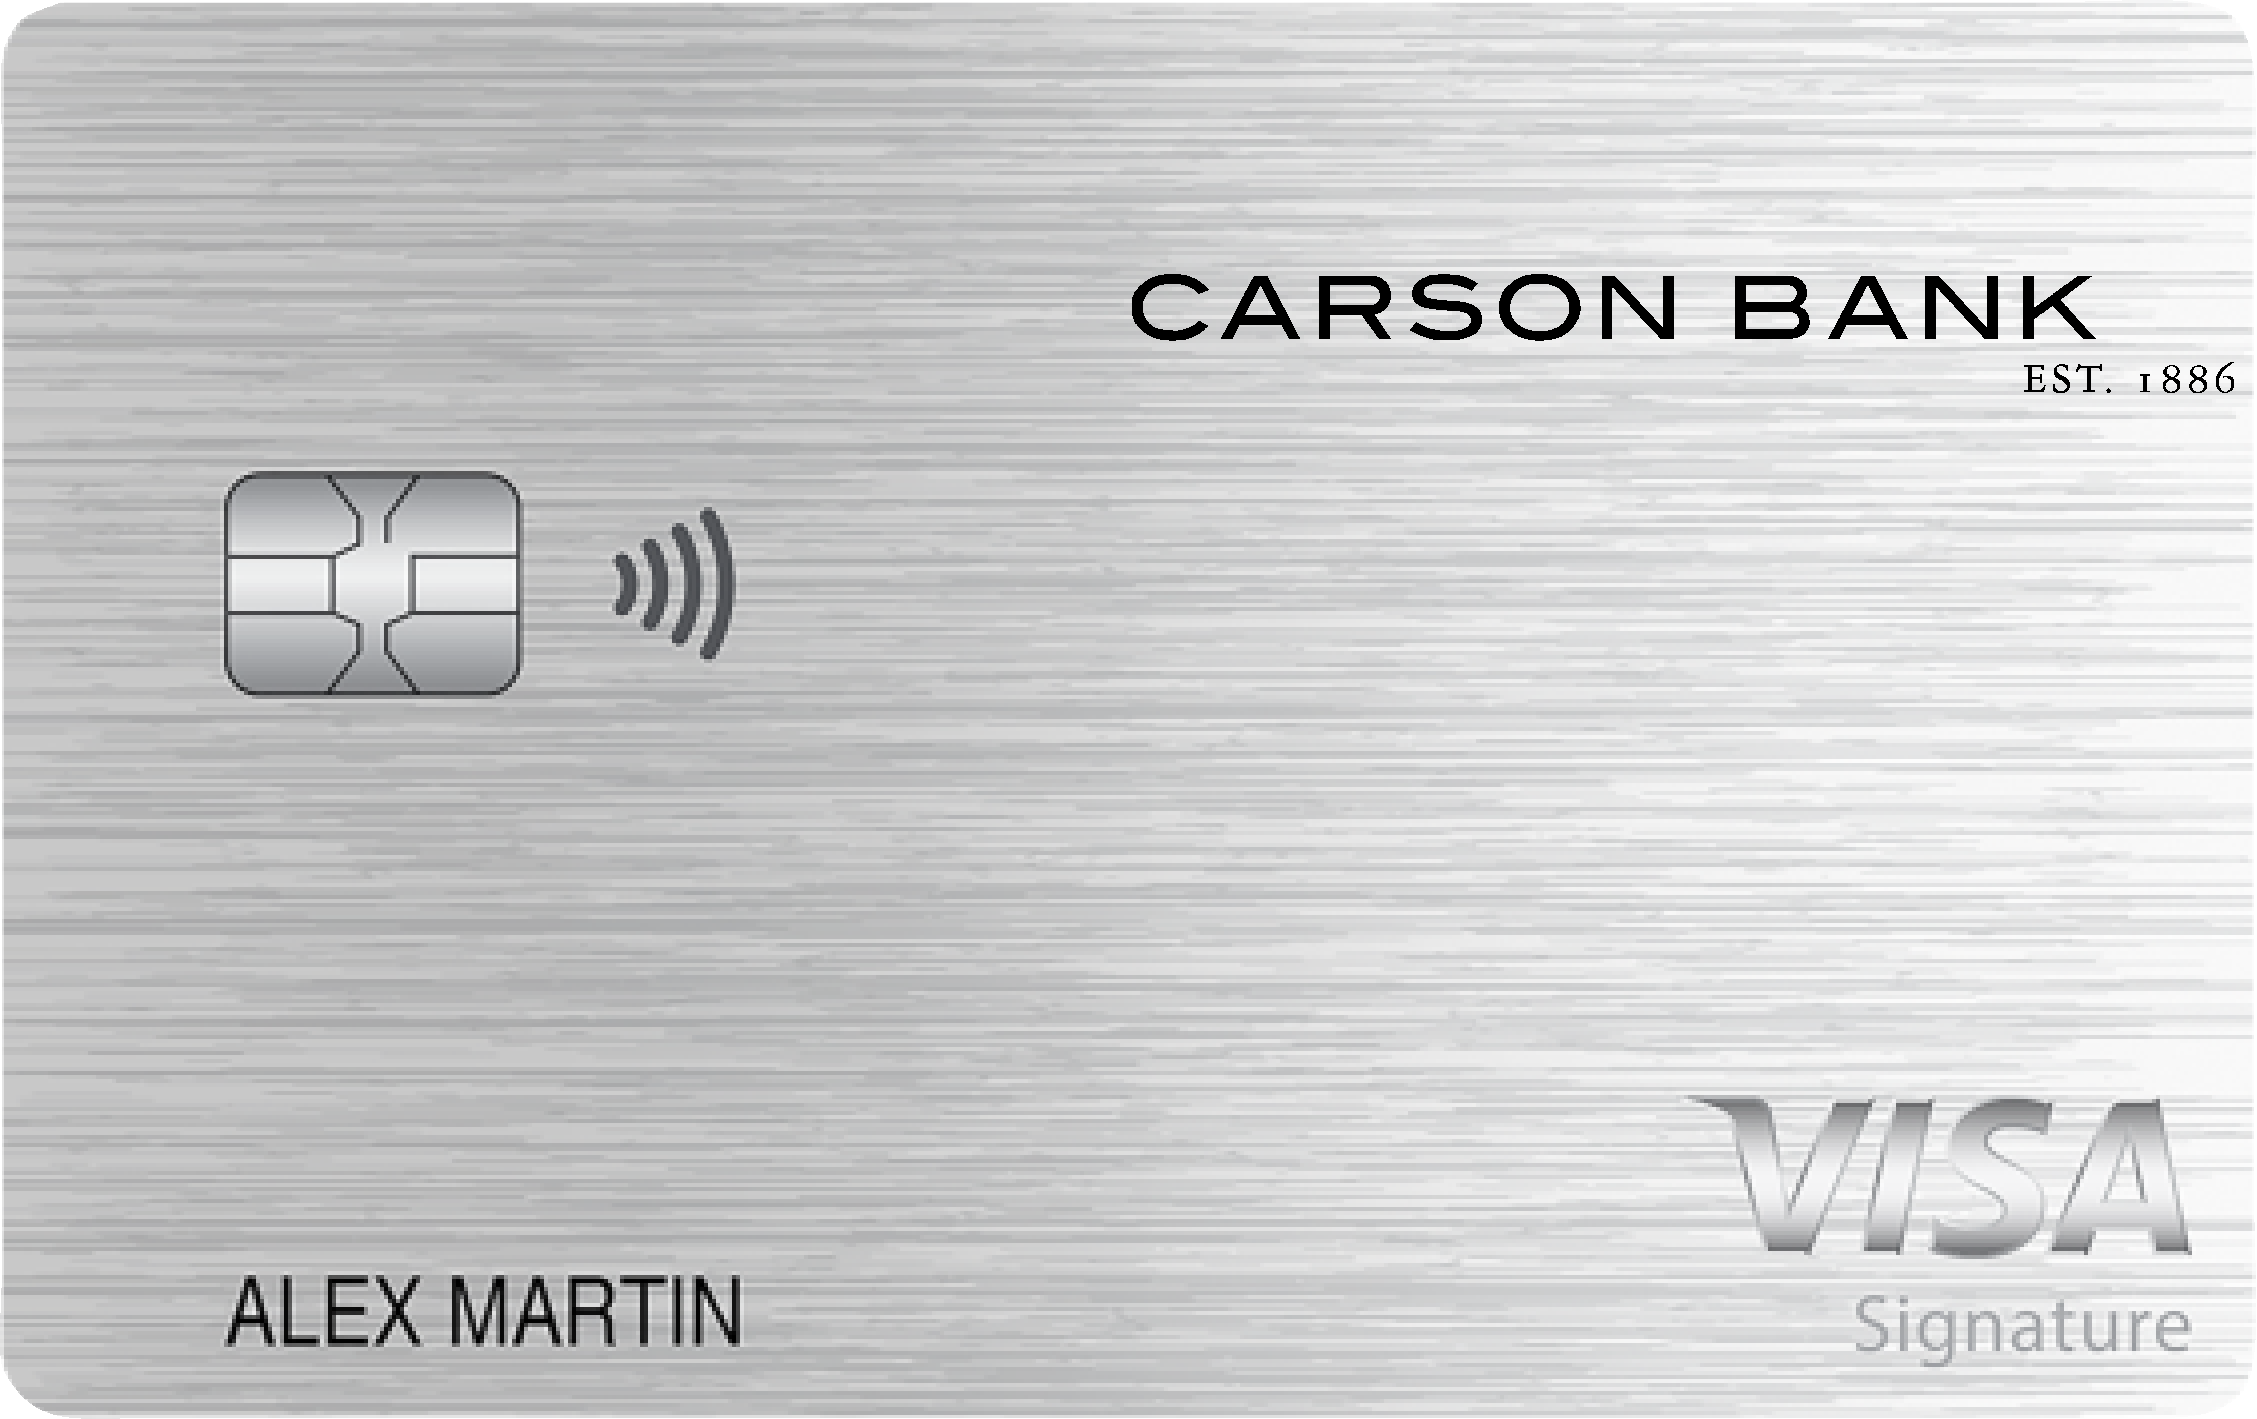 Carson Bank